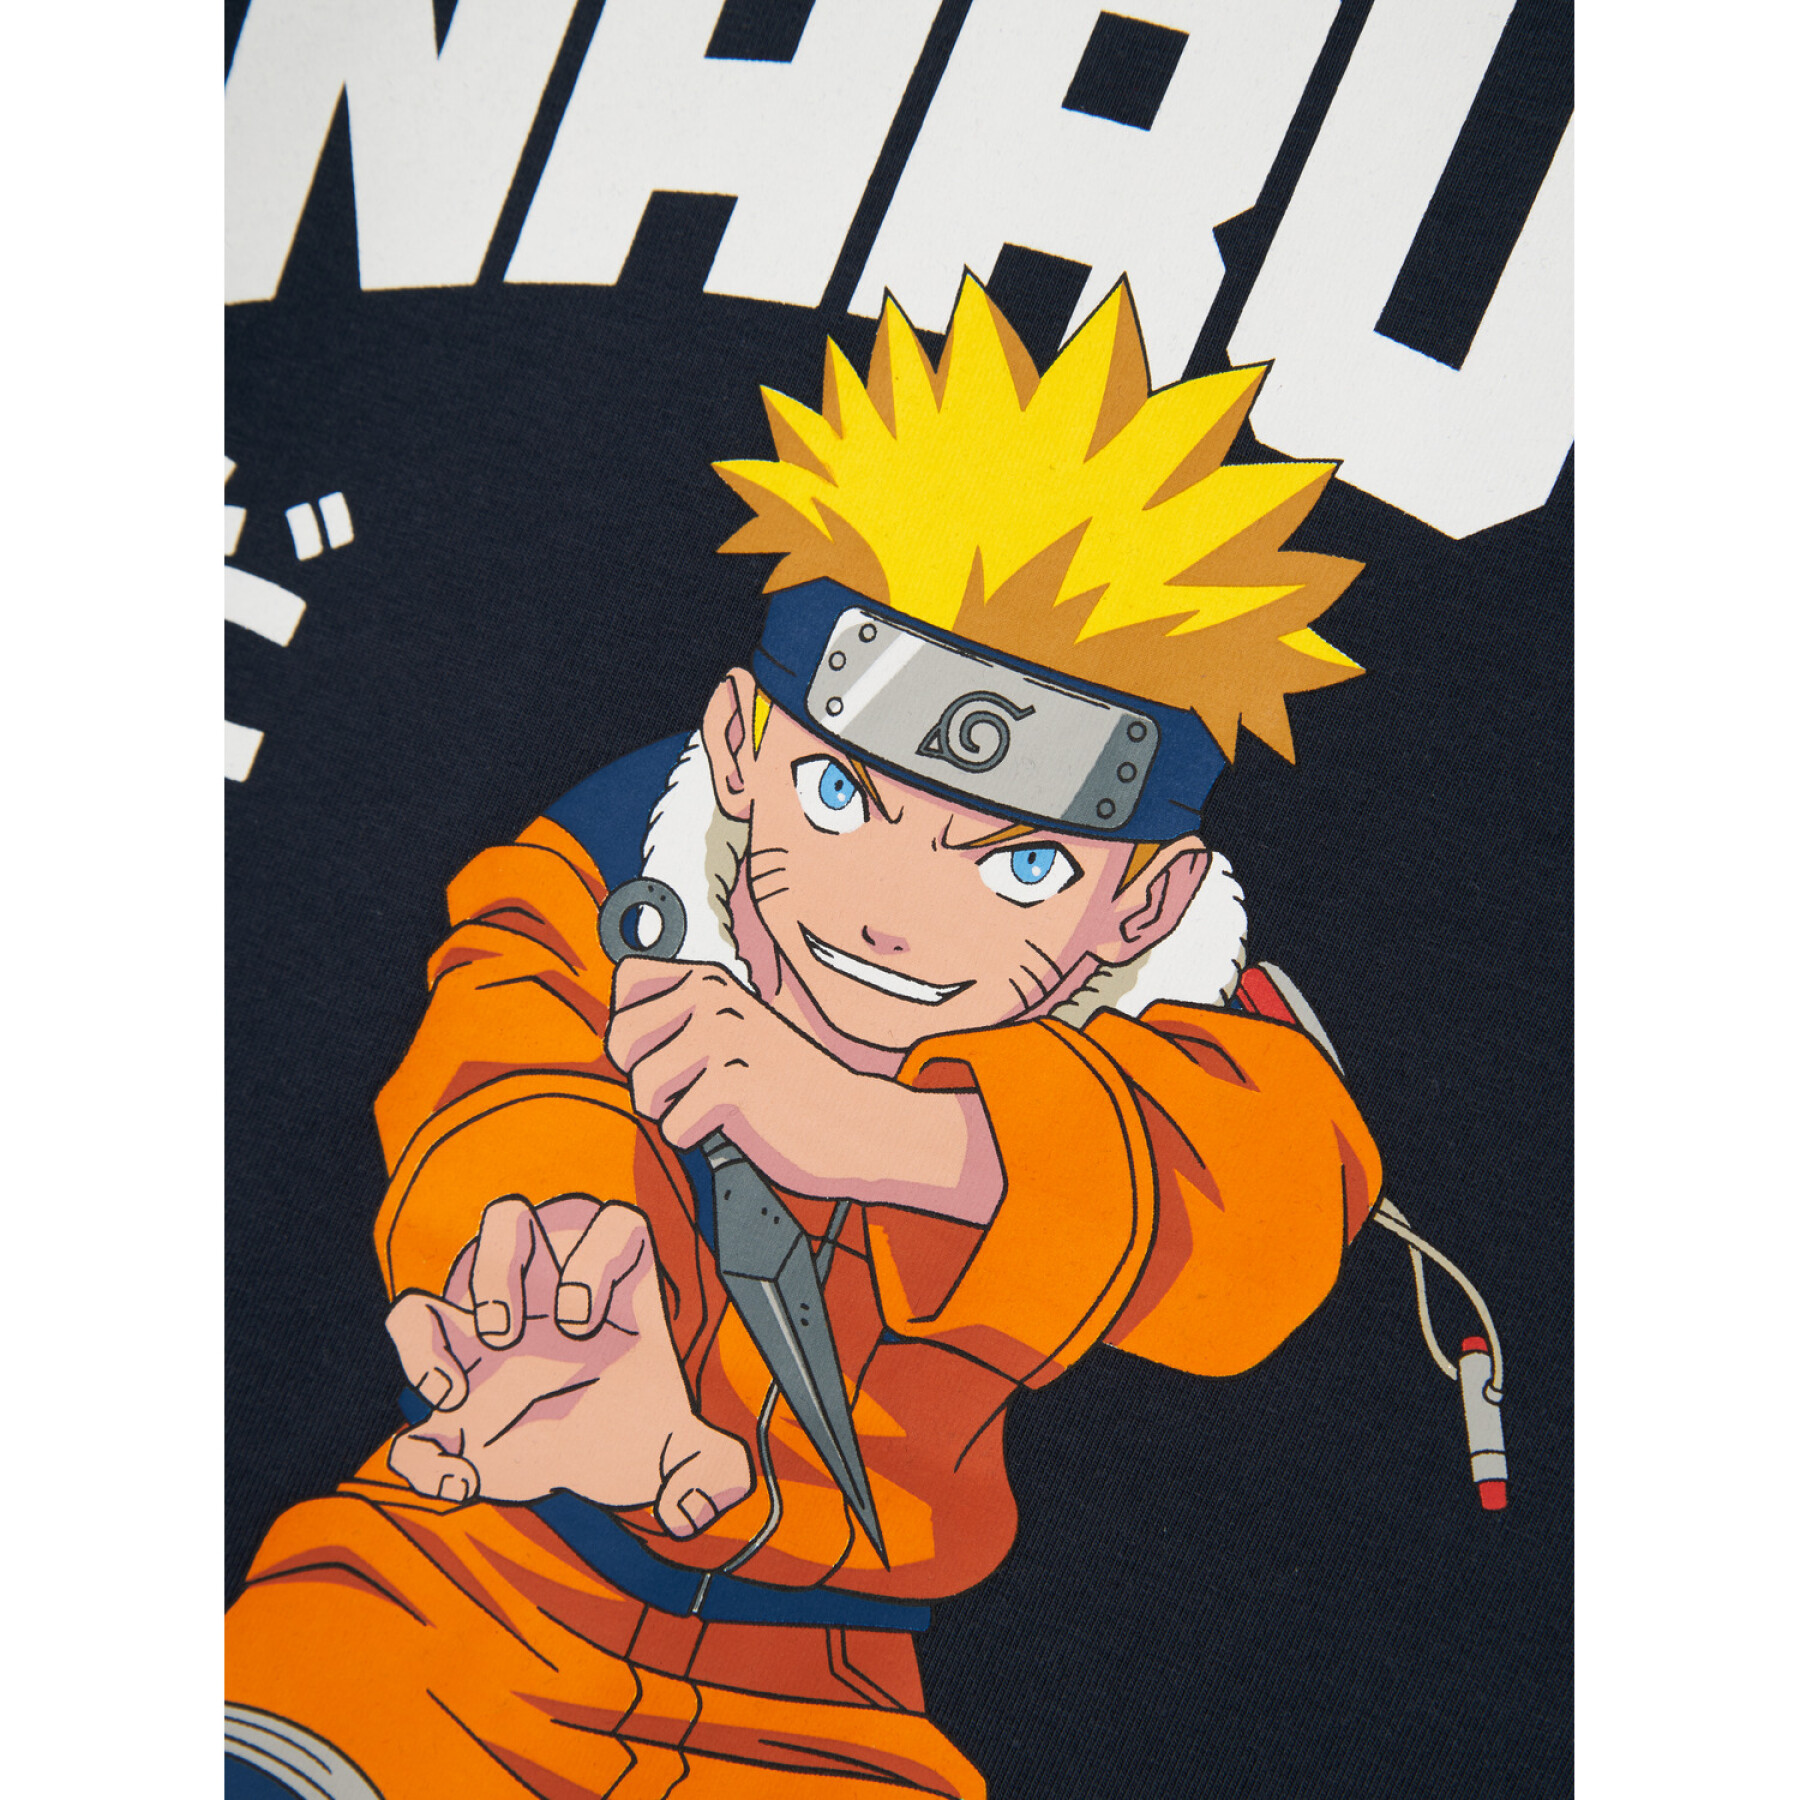 T-shirt de criança Name it Macar Naruto